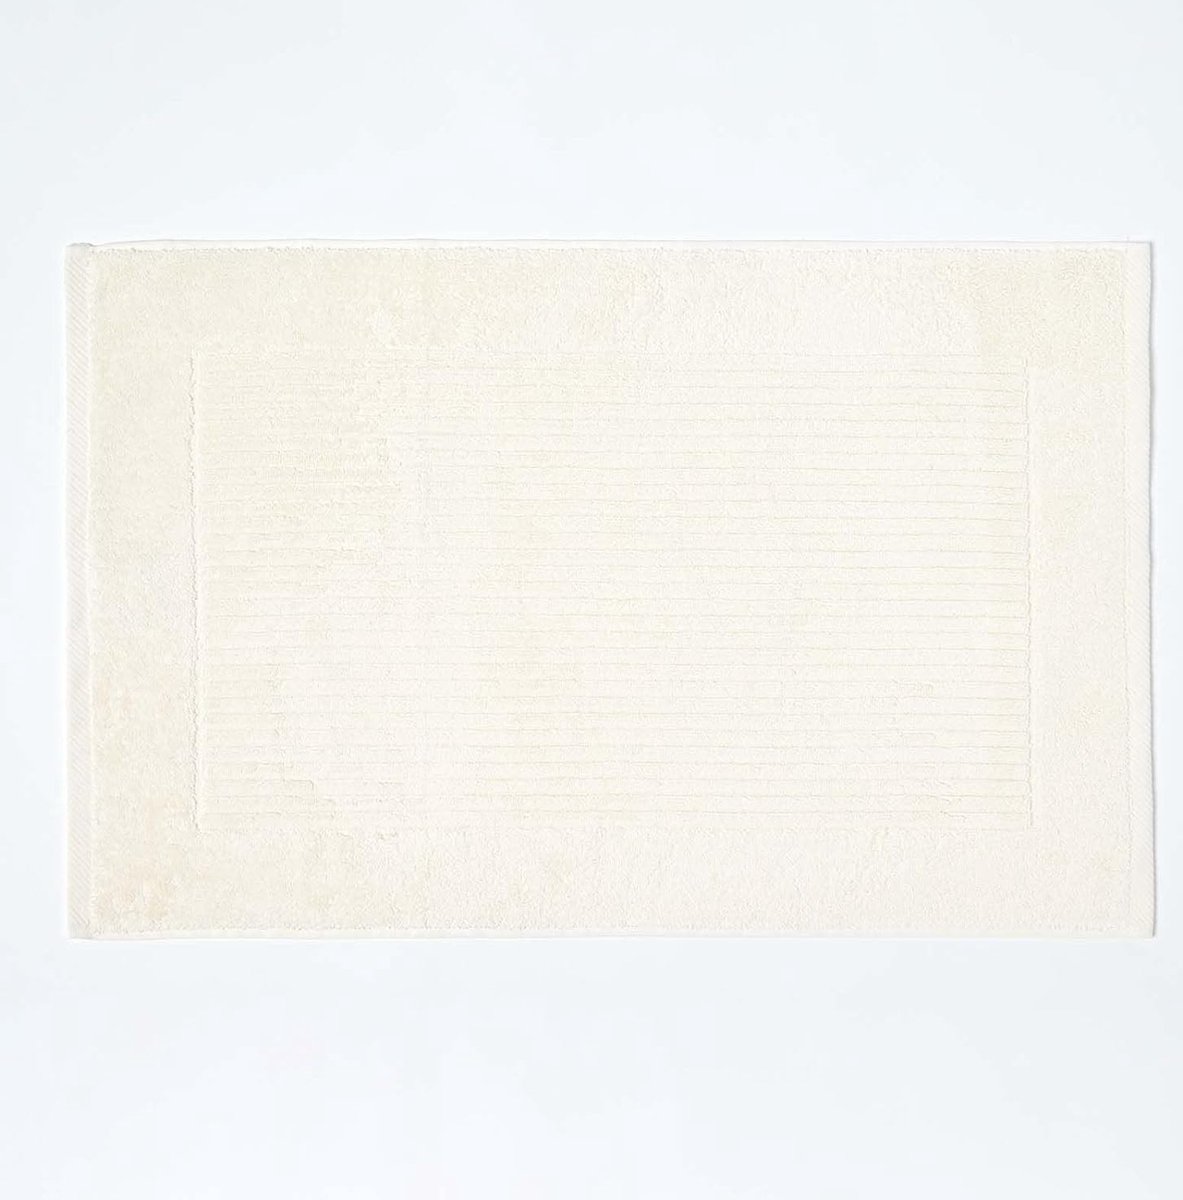 Badstof badmat, 50 x 80 cm, 100% katoen, hotelkwaliteit, verkrijgbaar 13 kleuren, crème, 50 cm x 70 cm